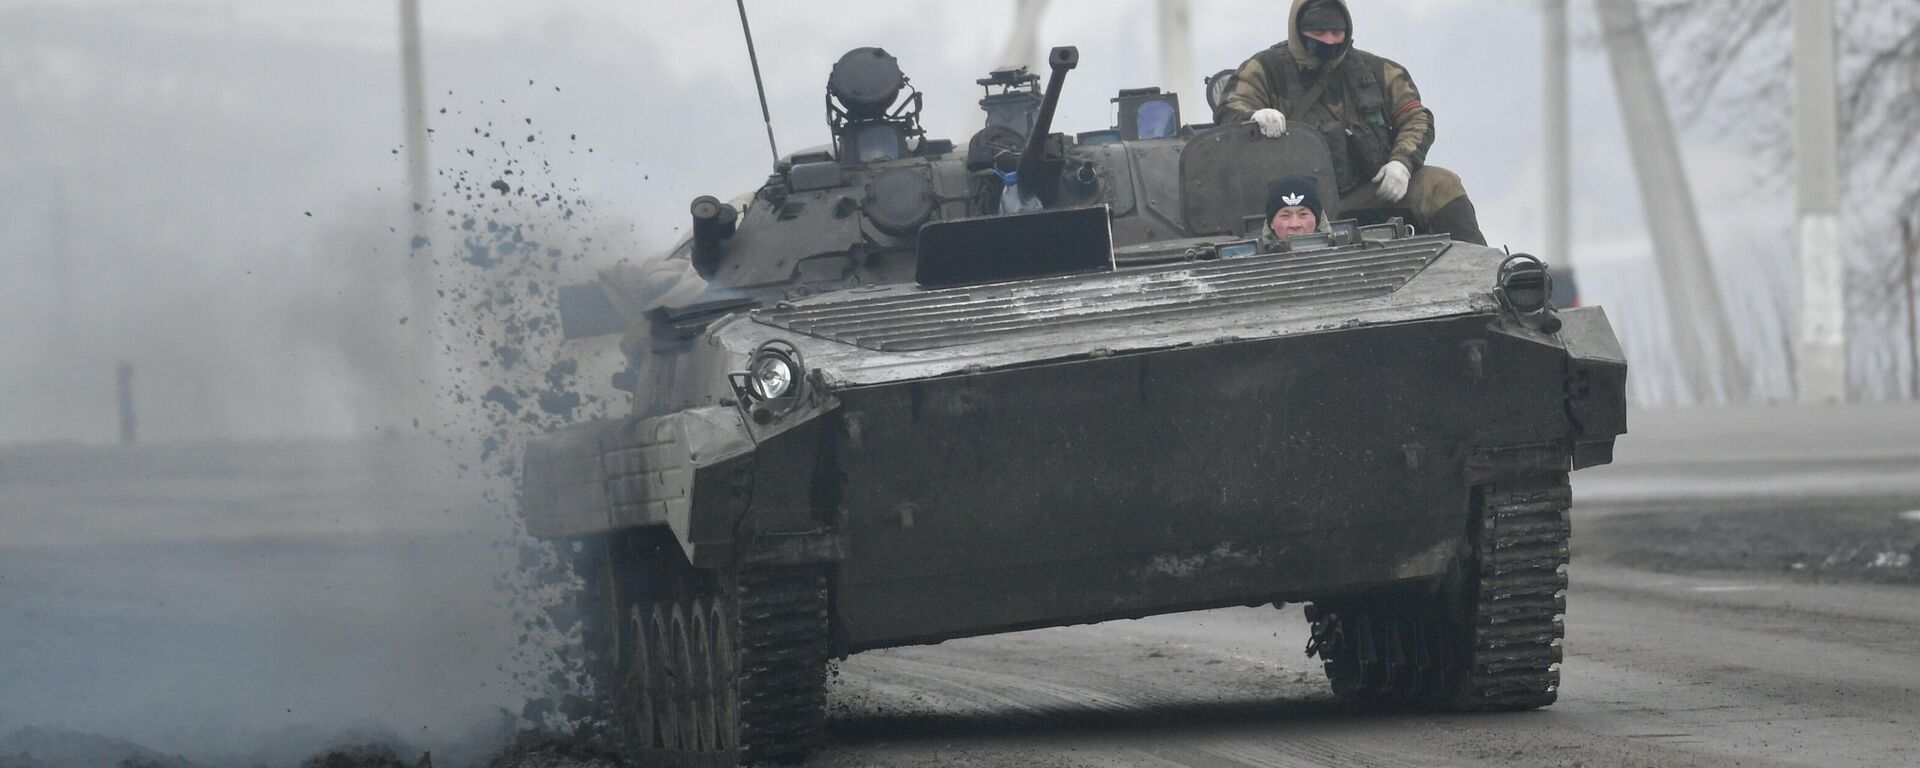 Боевая машина пехоты БМП-2 недалеко от границы с Украиной в Белгородской области, Россия - Sputnik Латвия, 1920, 01.03.2022